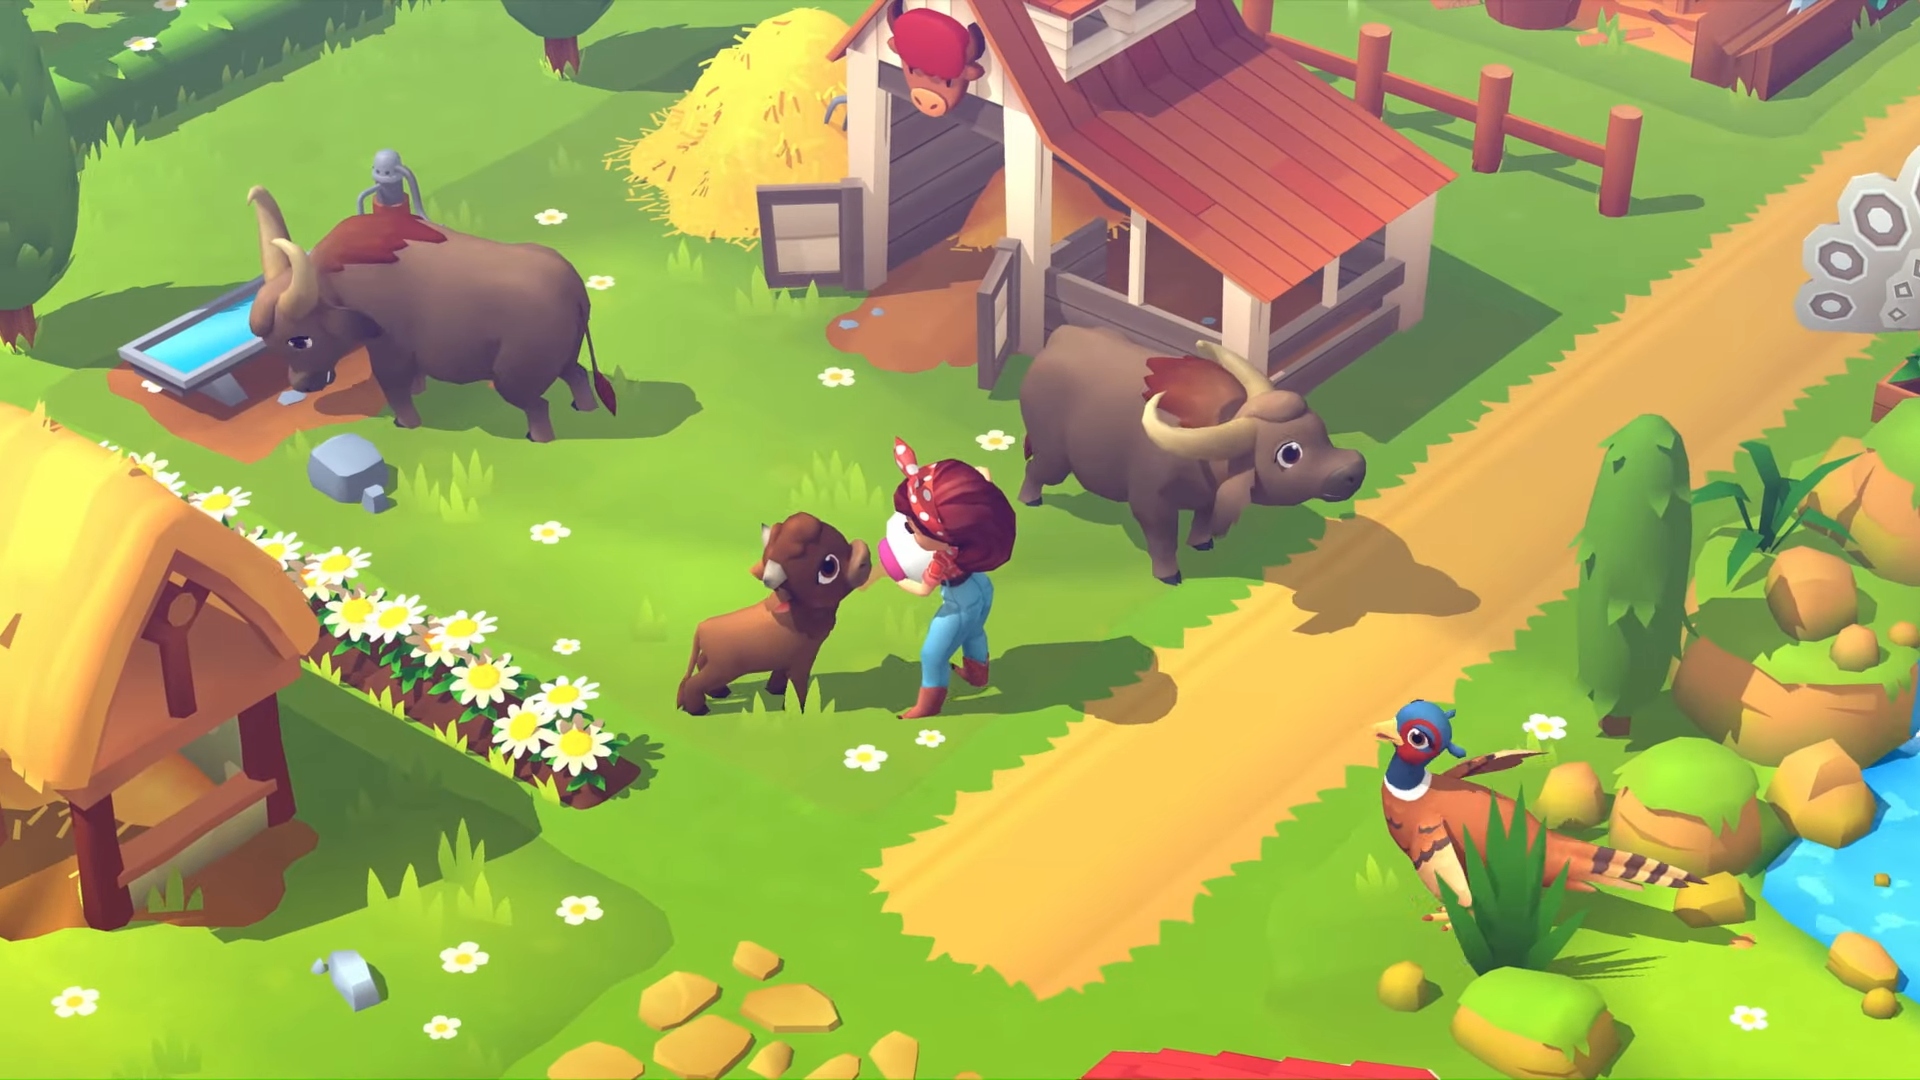 Najlepsze gry na farmie - FarmVille 3. Zrzut ekranu przedstawia postać karmiącą mlekiem krowim dziecko na farmie.